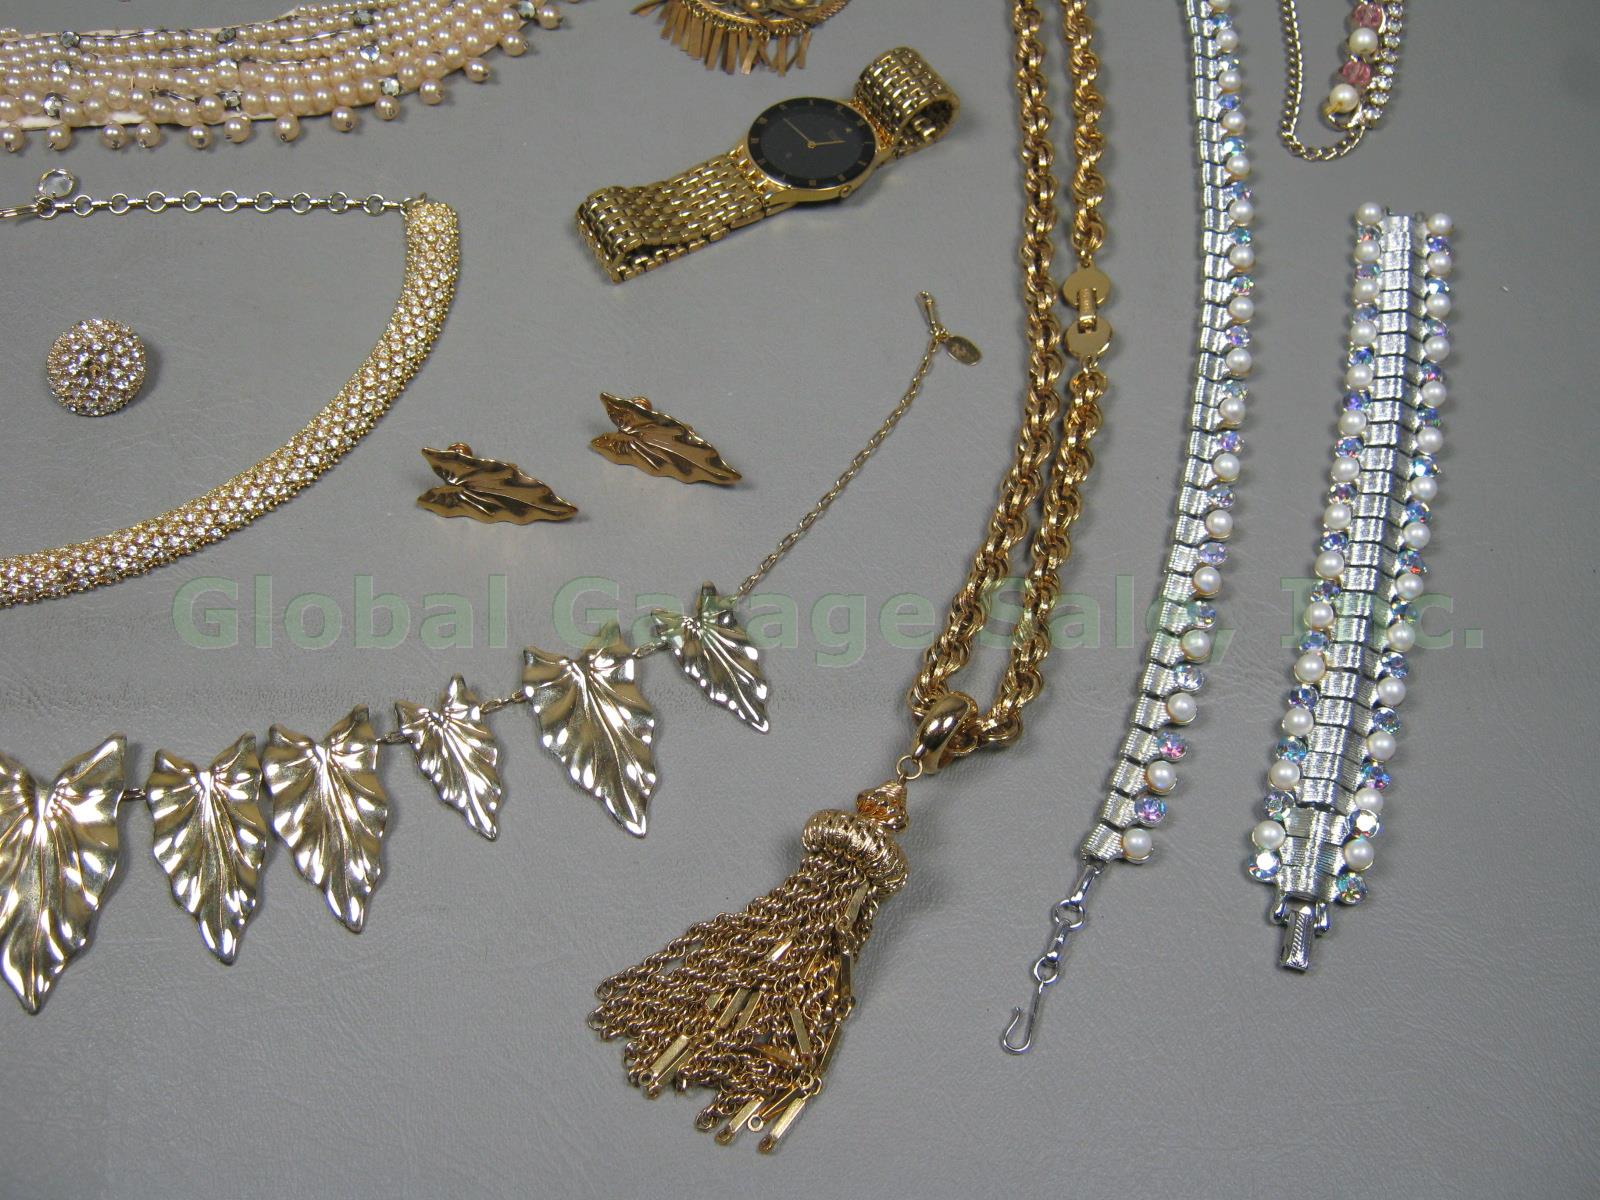 Vtg Costume Jewelry Lot Pearl Necklace Earring Bracelet Coro Monet Citizen Watch 1